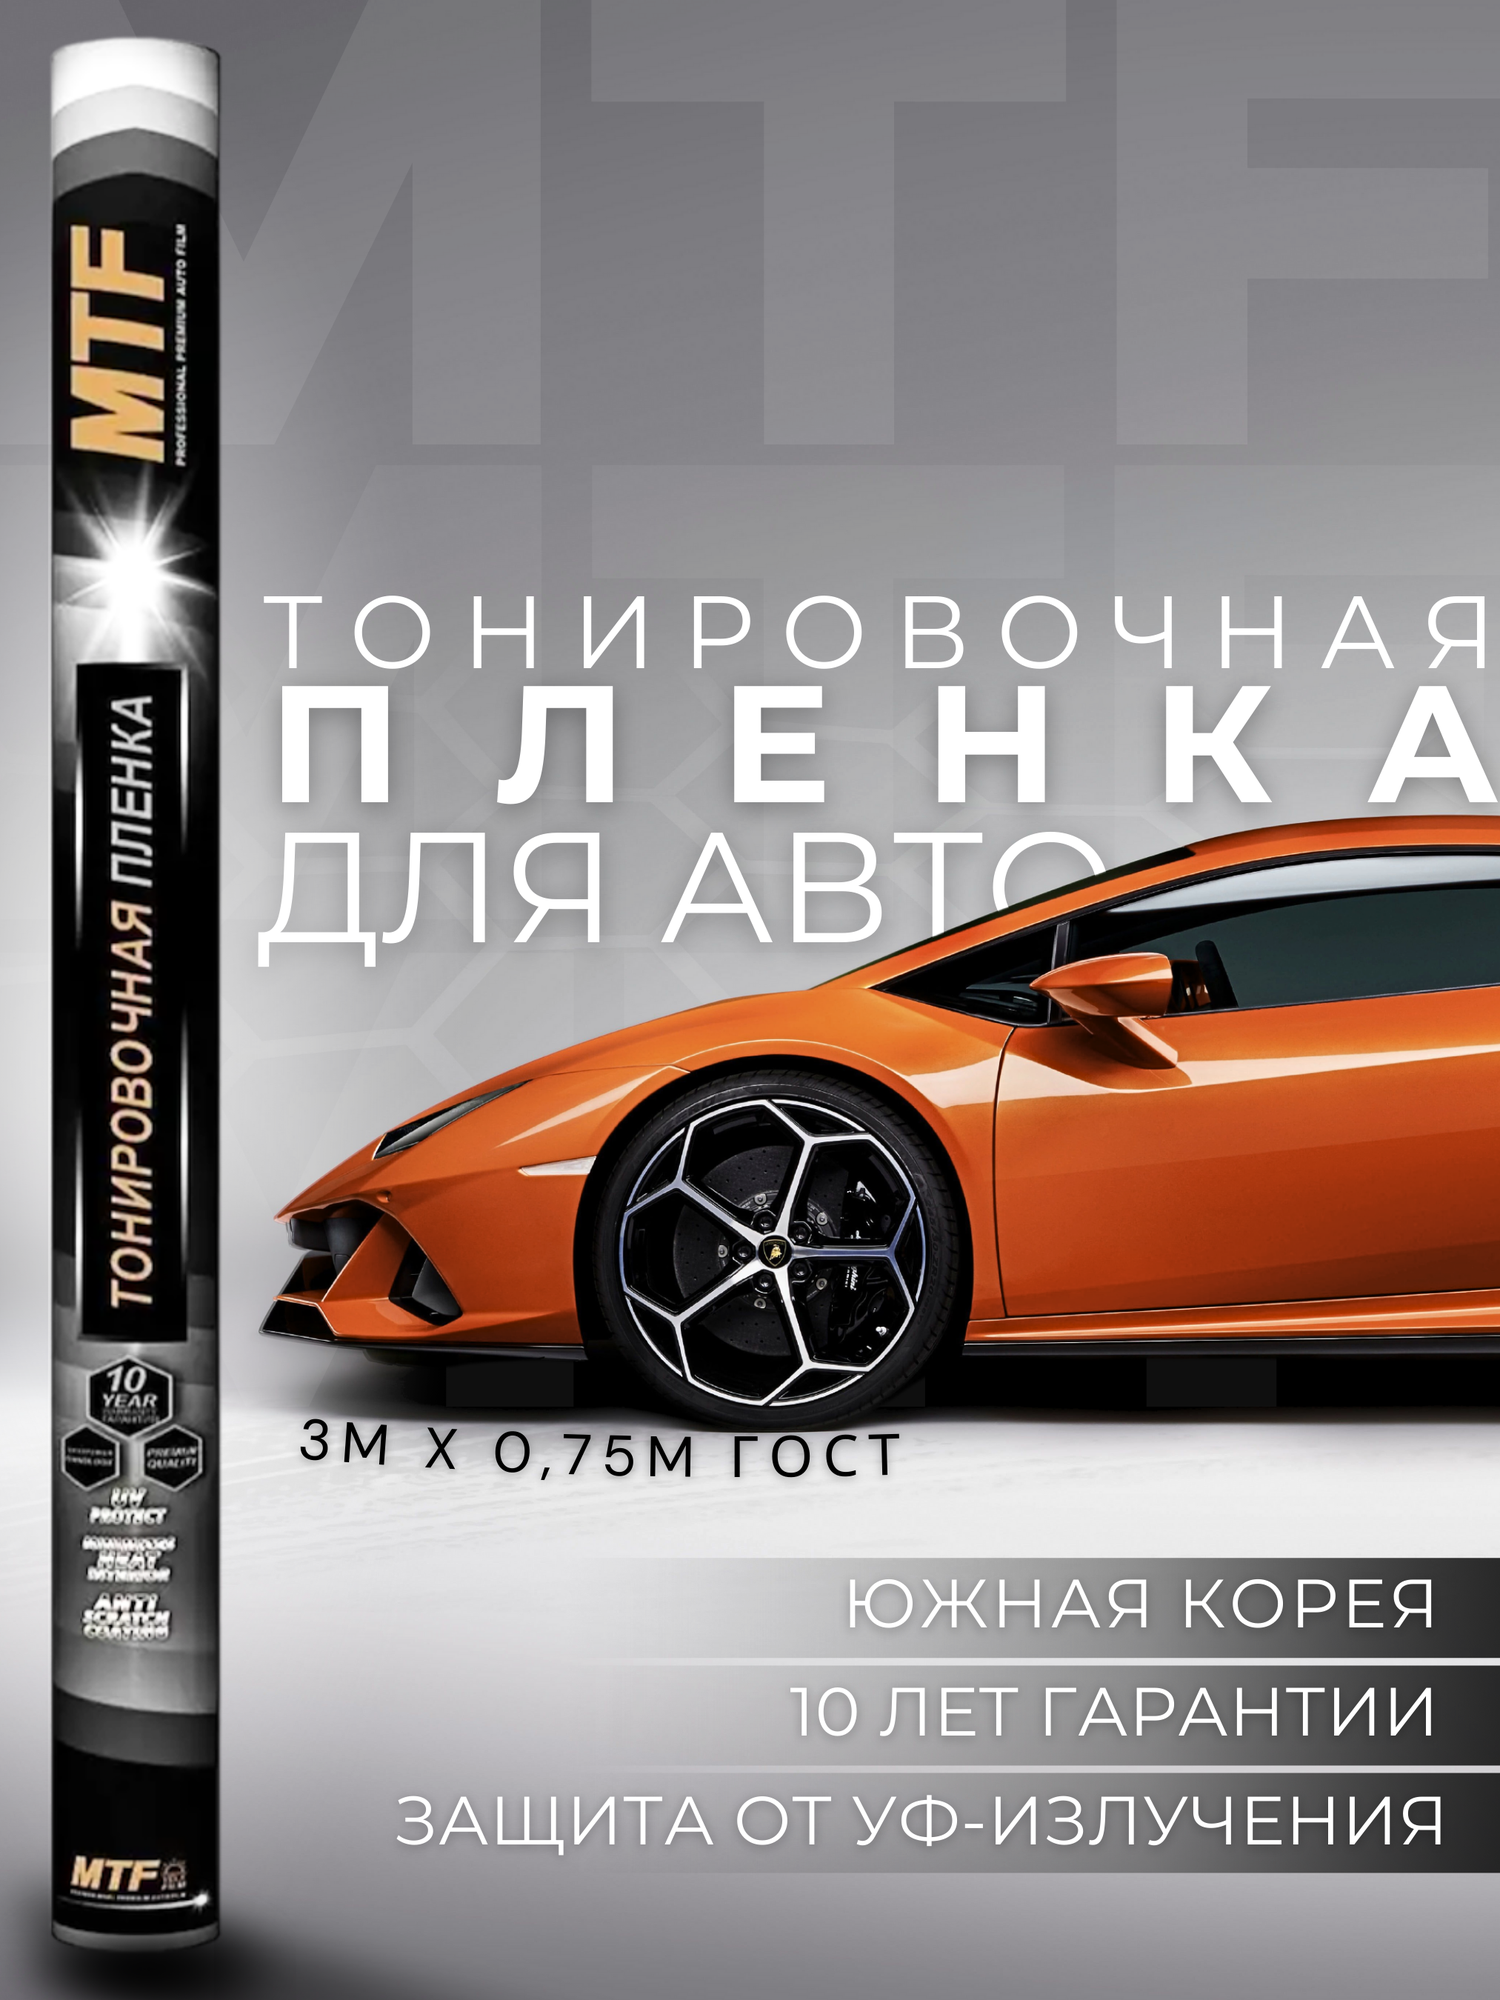 Пленка тонировочная "MTF Original" в тубе "Premium" 35% Сharcol (075м х 3м)